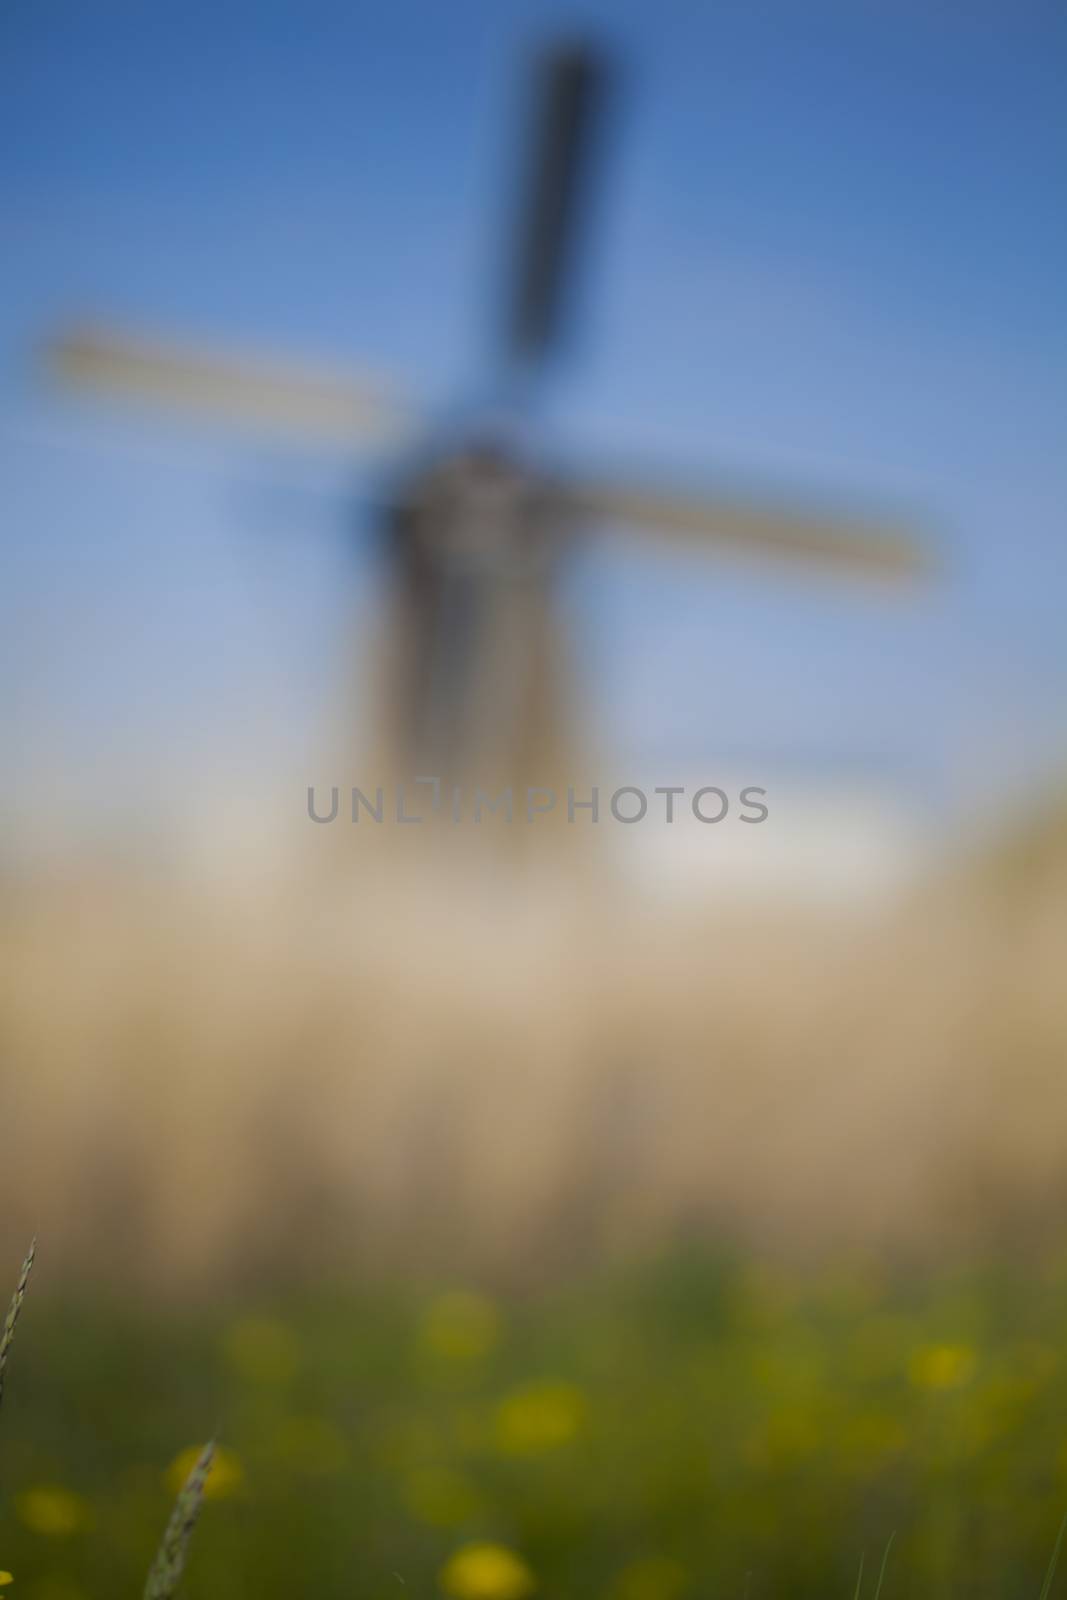 Dutch windmill in Kinderdijk